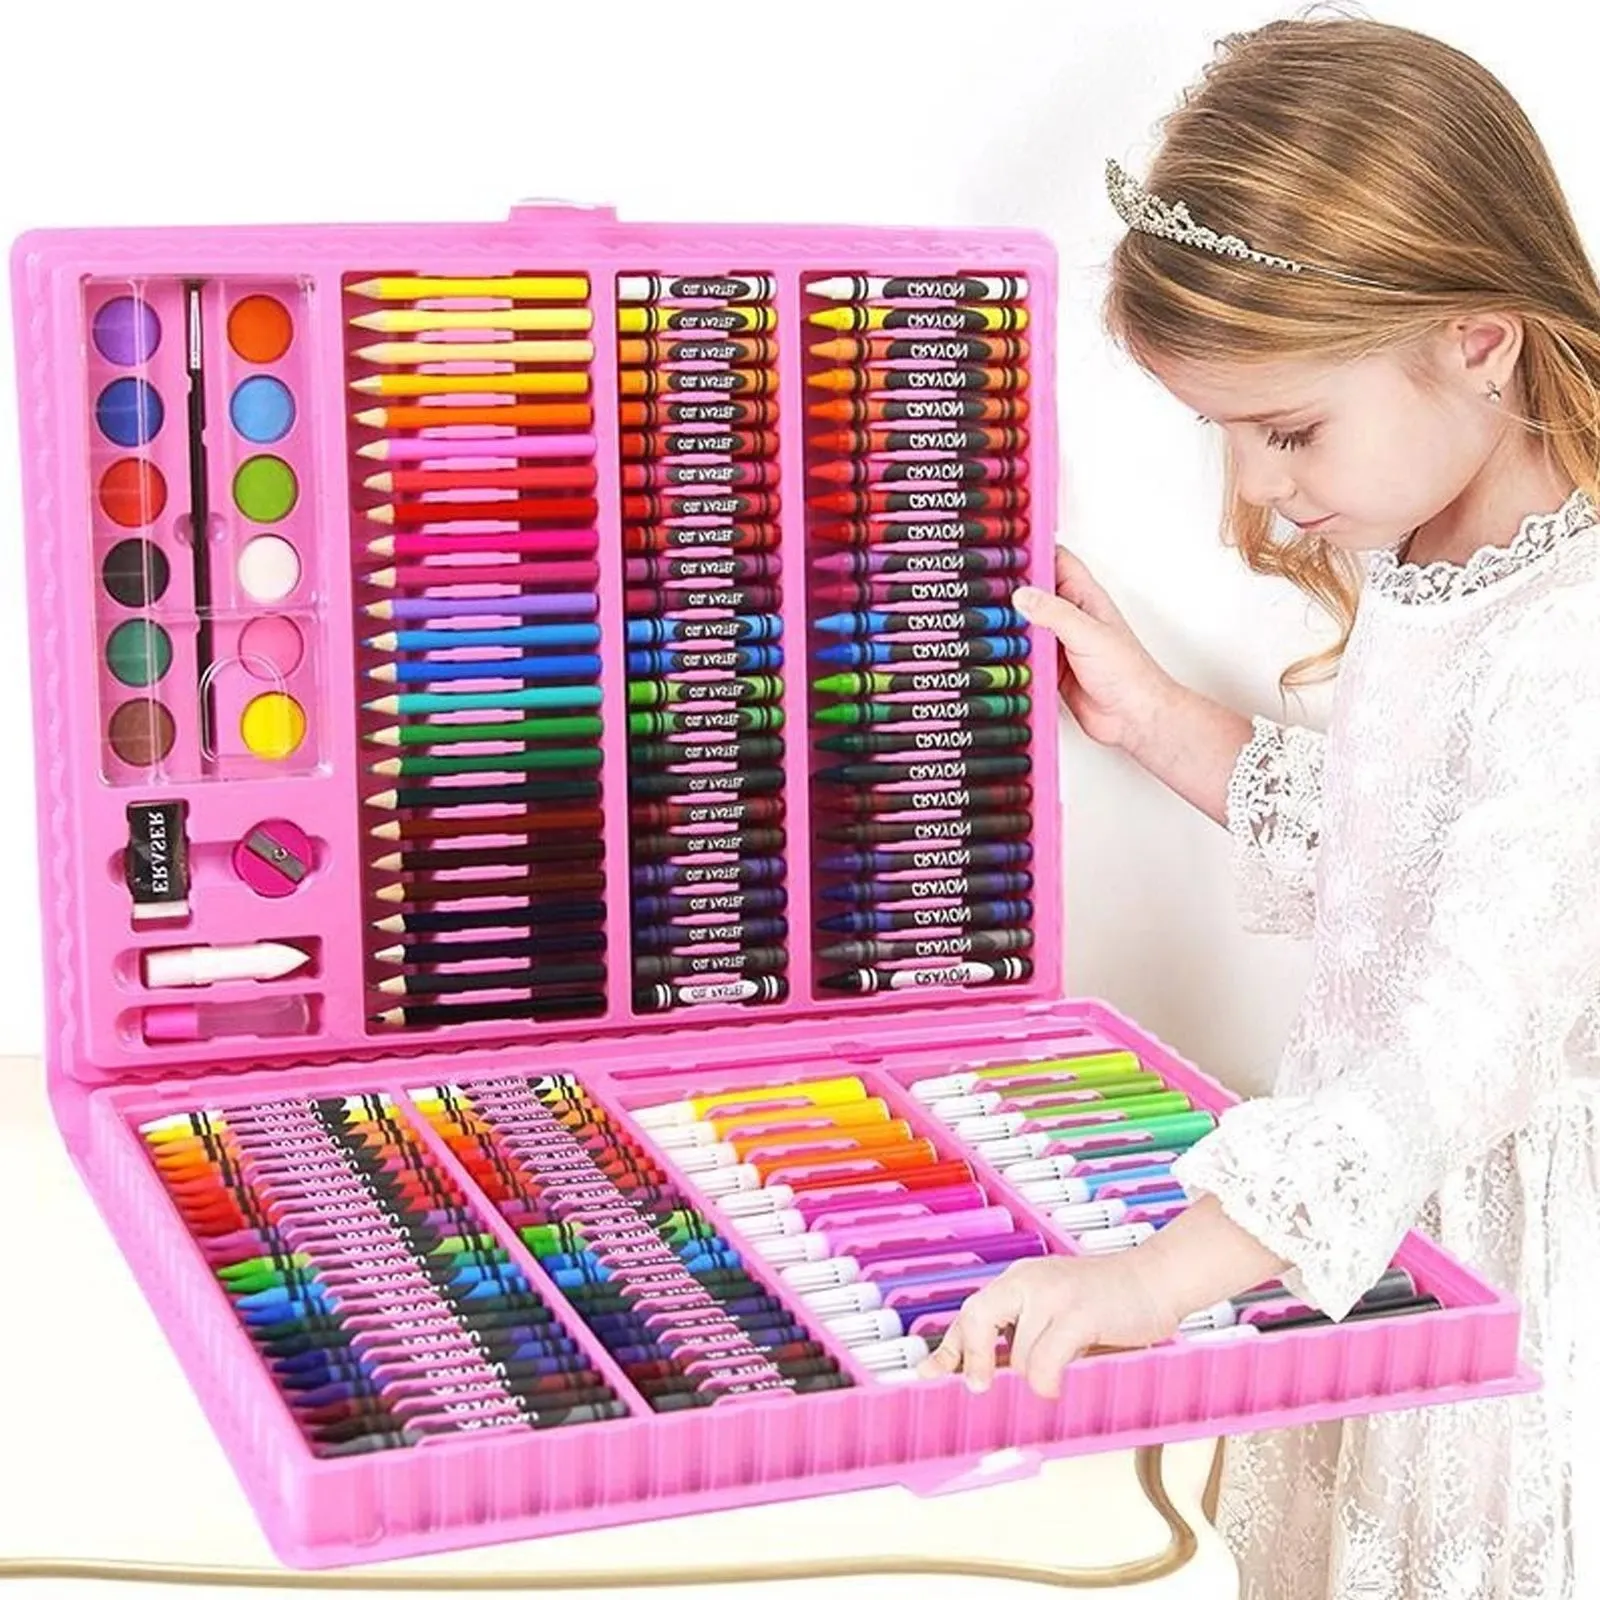 168 pz bambini pittura disegno Paiting Art Set con pastelli pastelli ad olio pennarelli ad acquerello strumenti a matita colorata ragazzi ragazze regalo